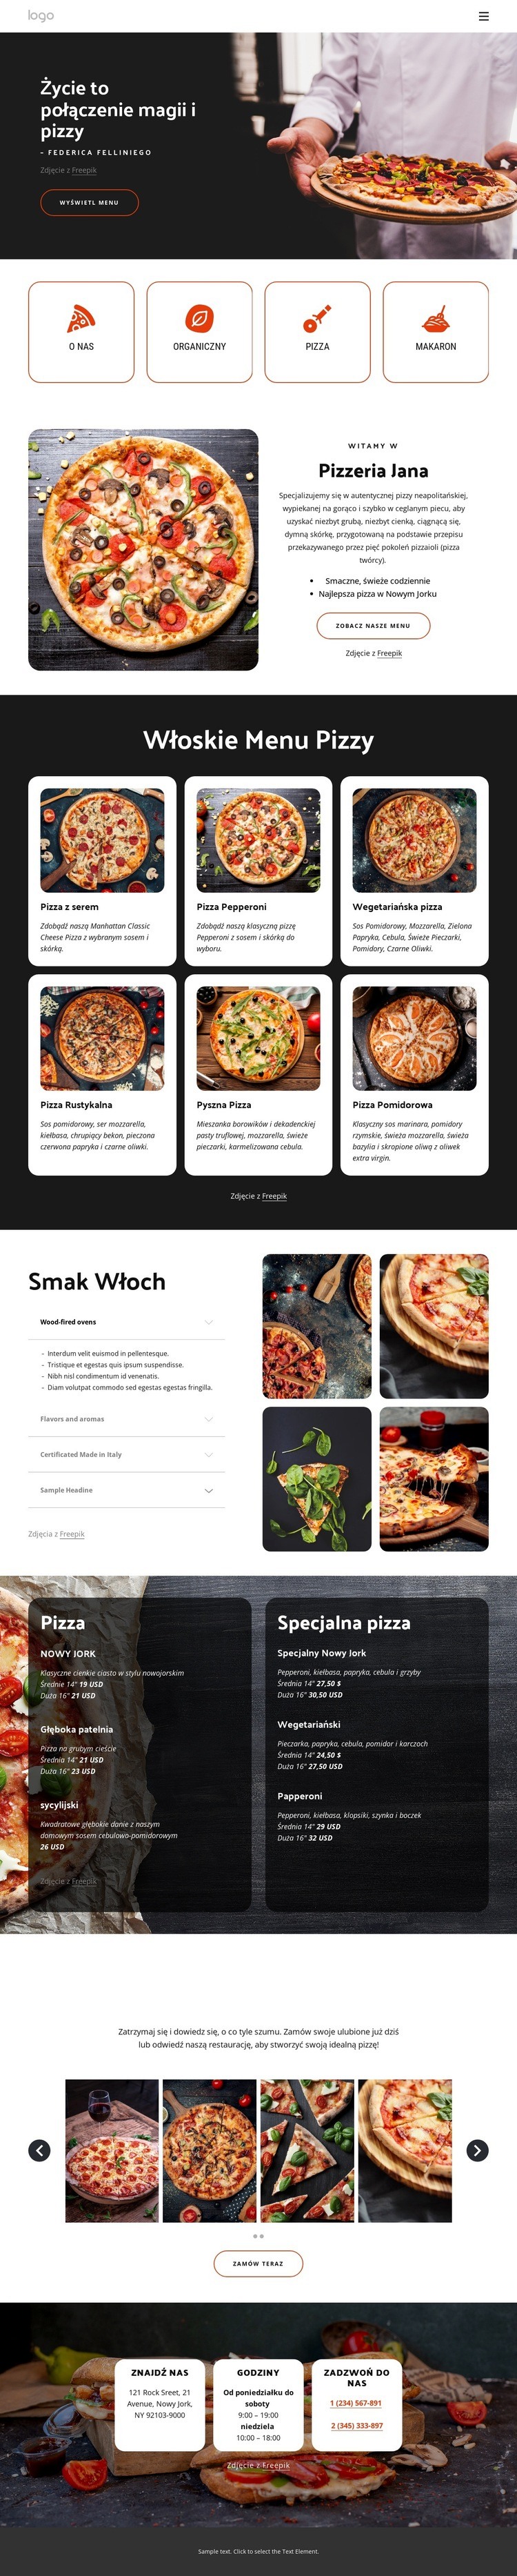 Pizzeria rodzinna Szablon HTML5